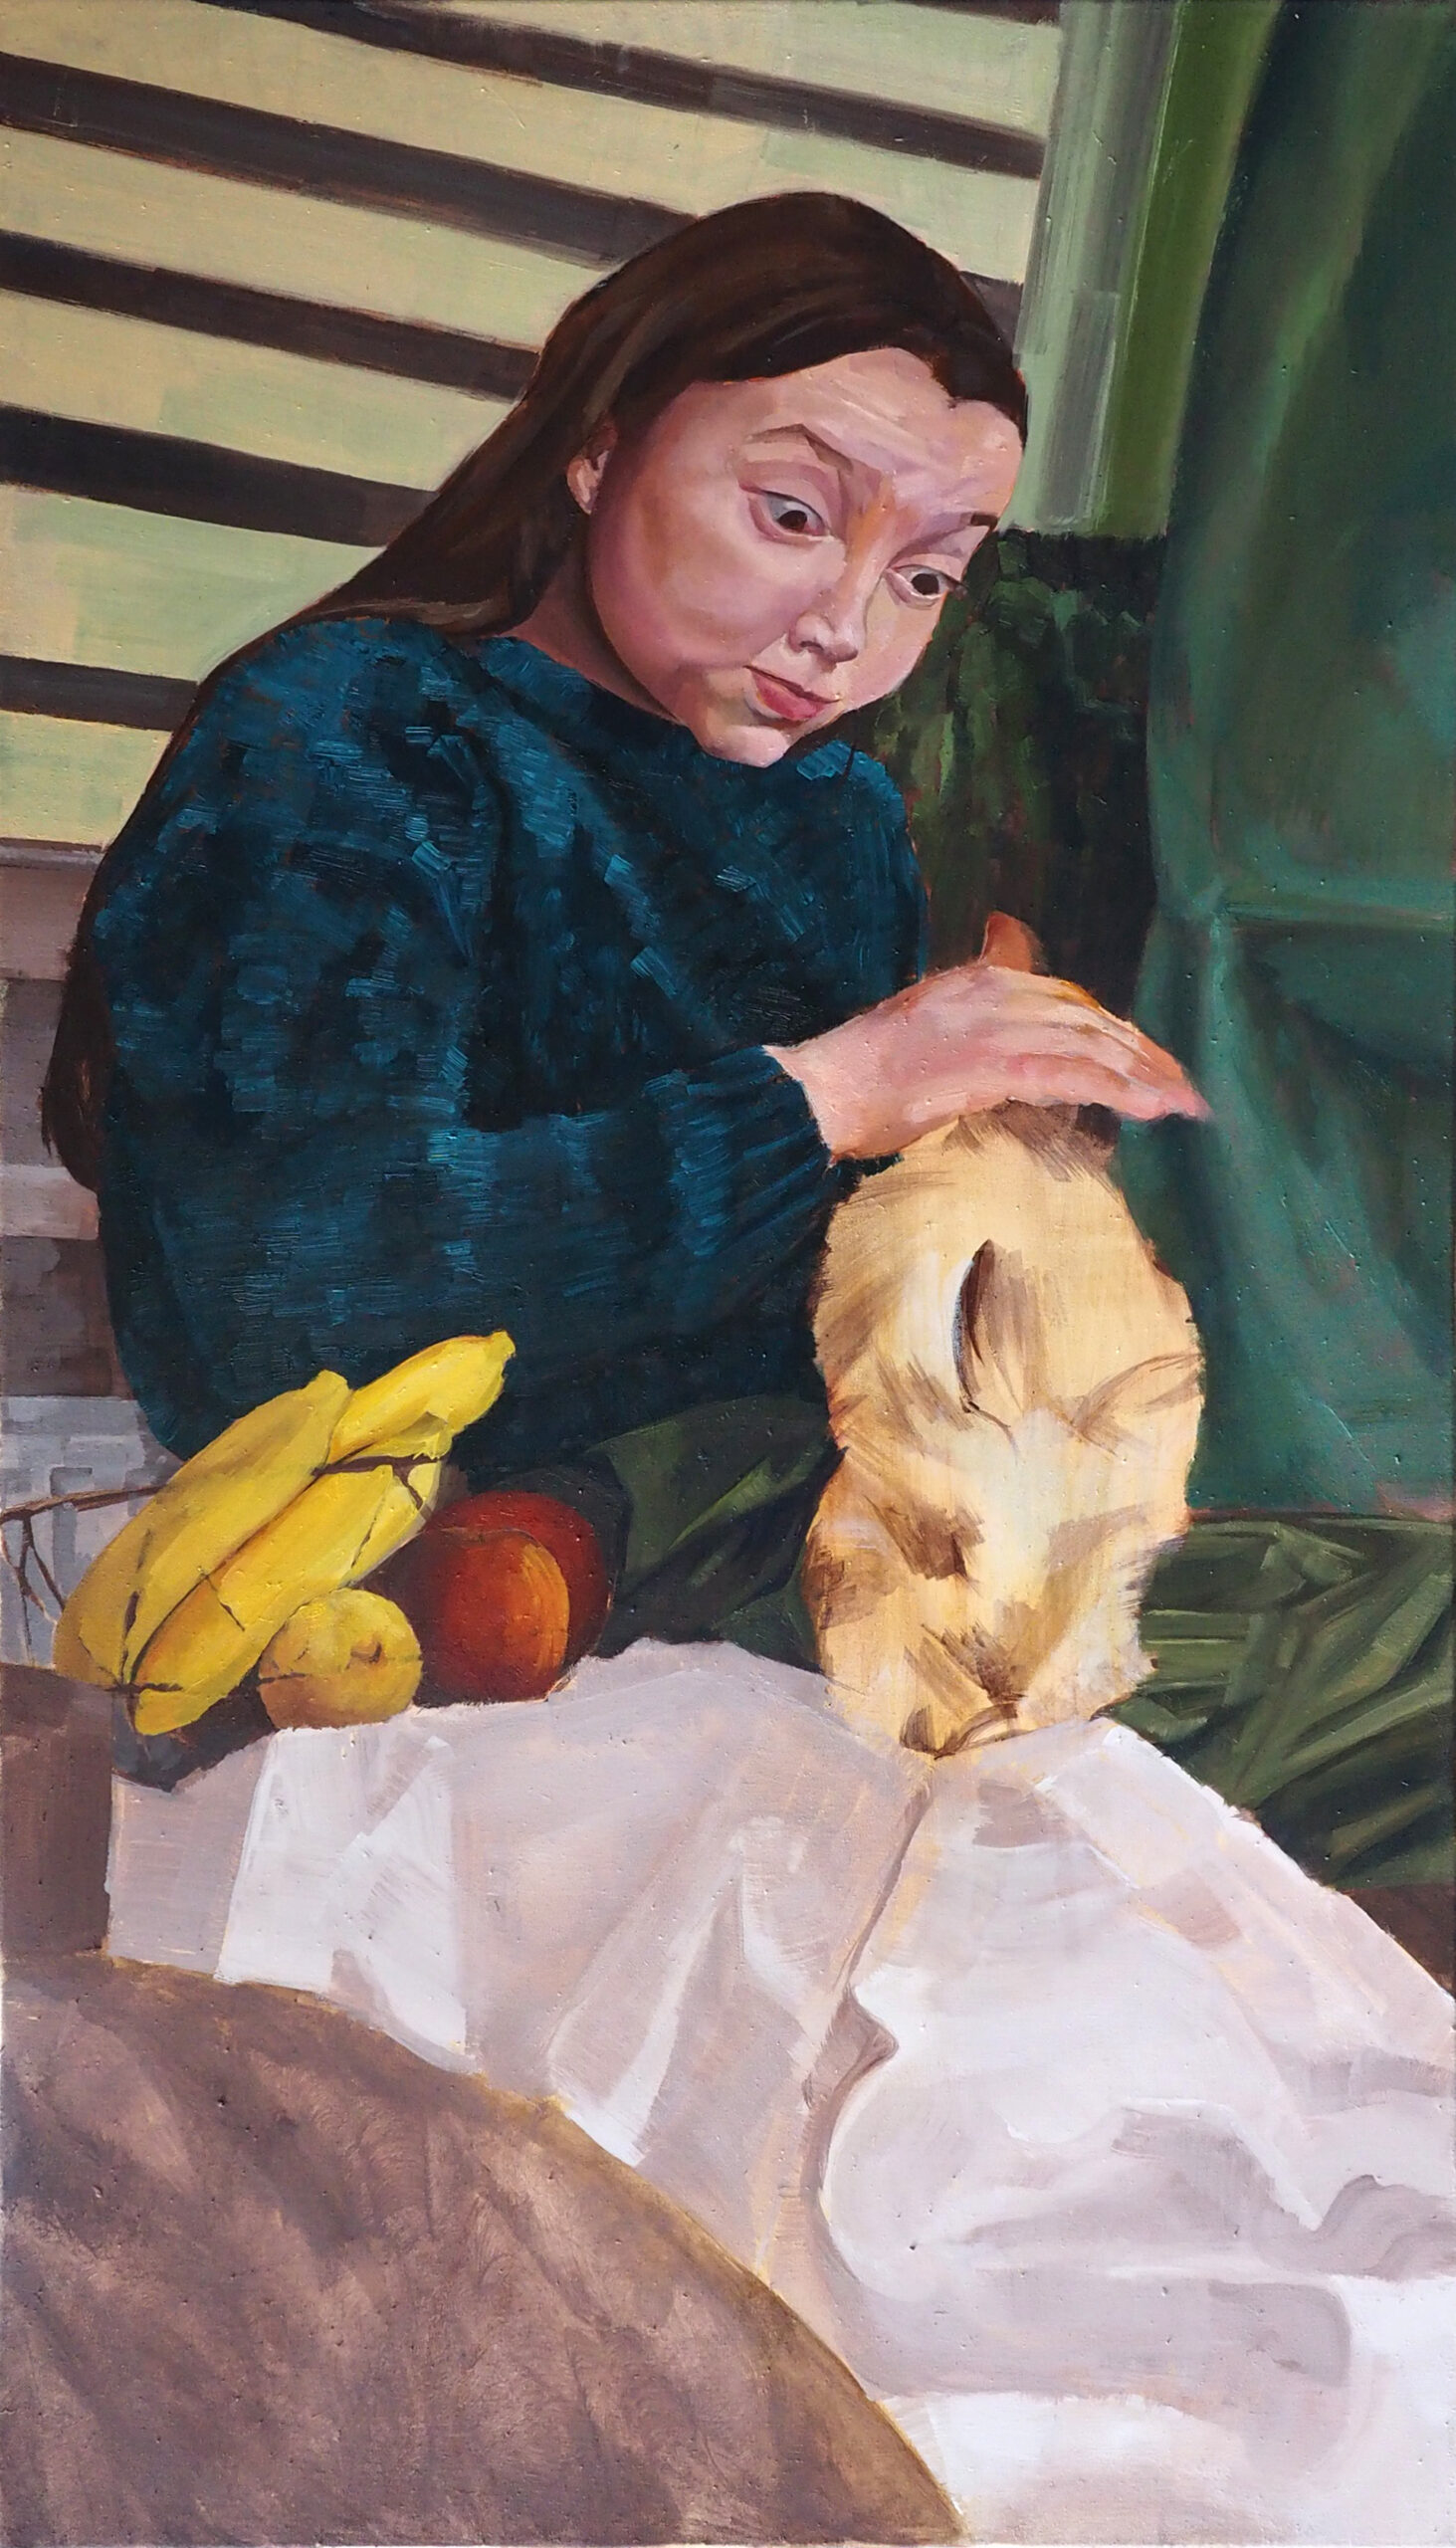 Kilkuletnia dziewczynka trzyma na kolanach jasnobrązowego królika. Obok niej znajduje się kosz z owocami. Obraz jest namalowany z zielono-brązowych barwach.